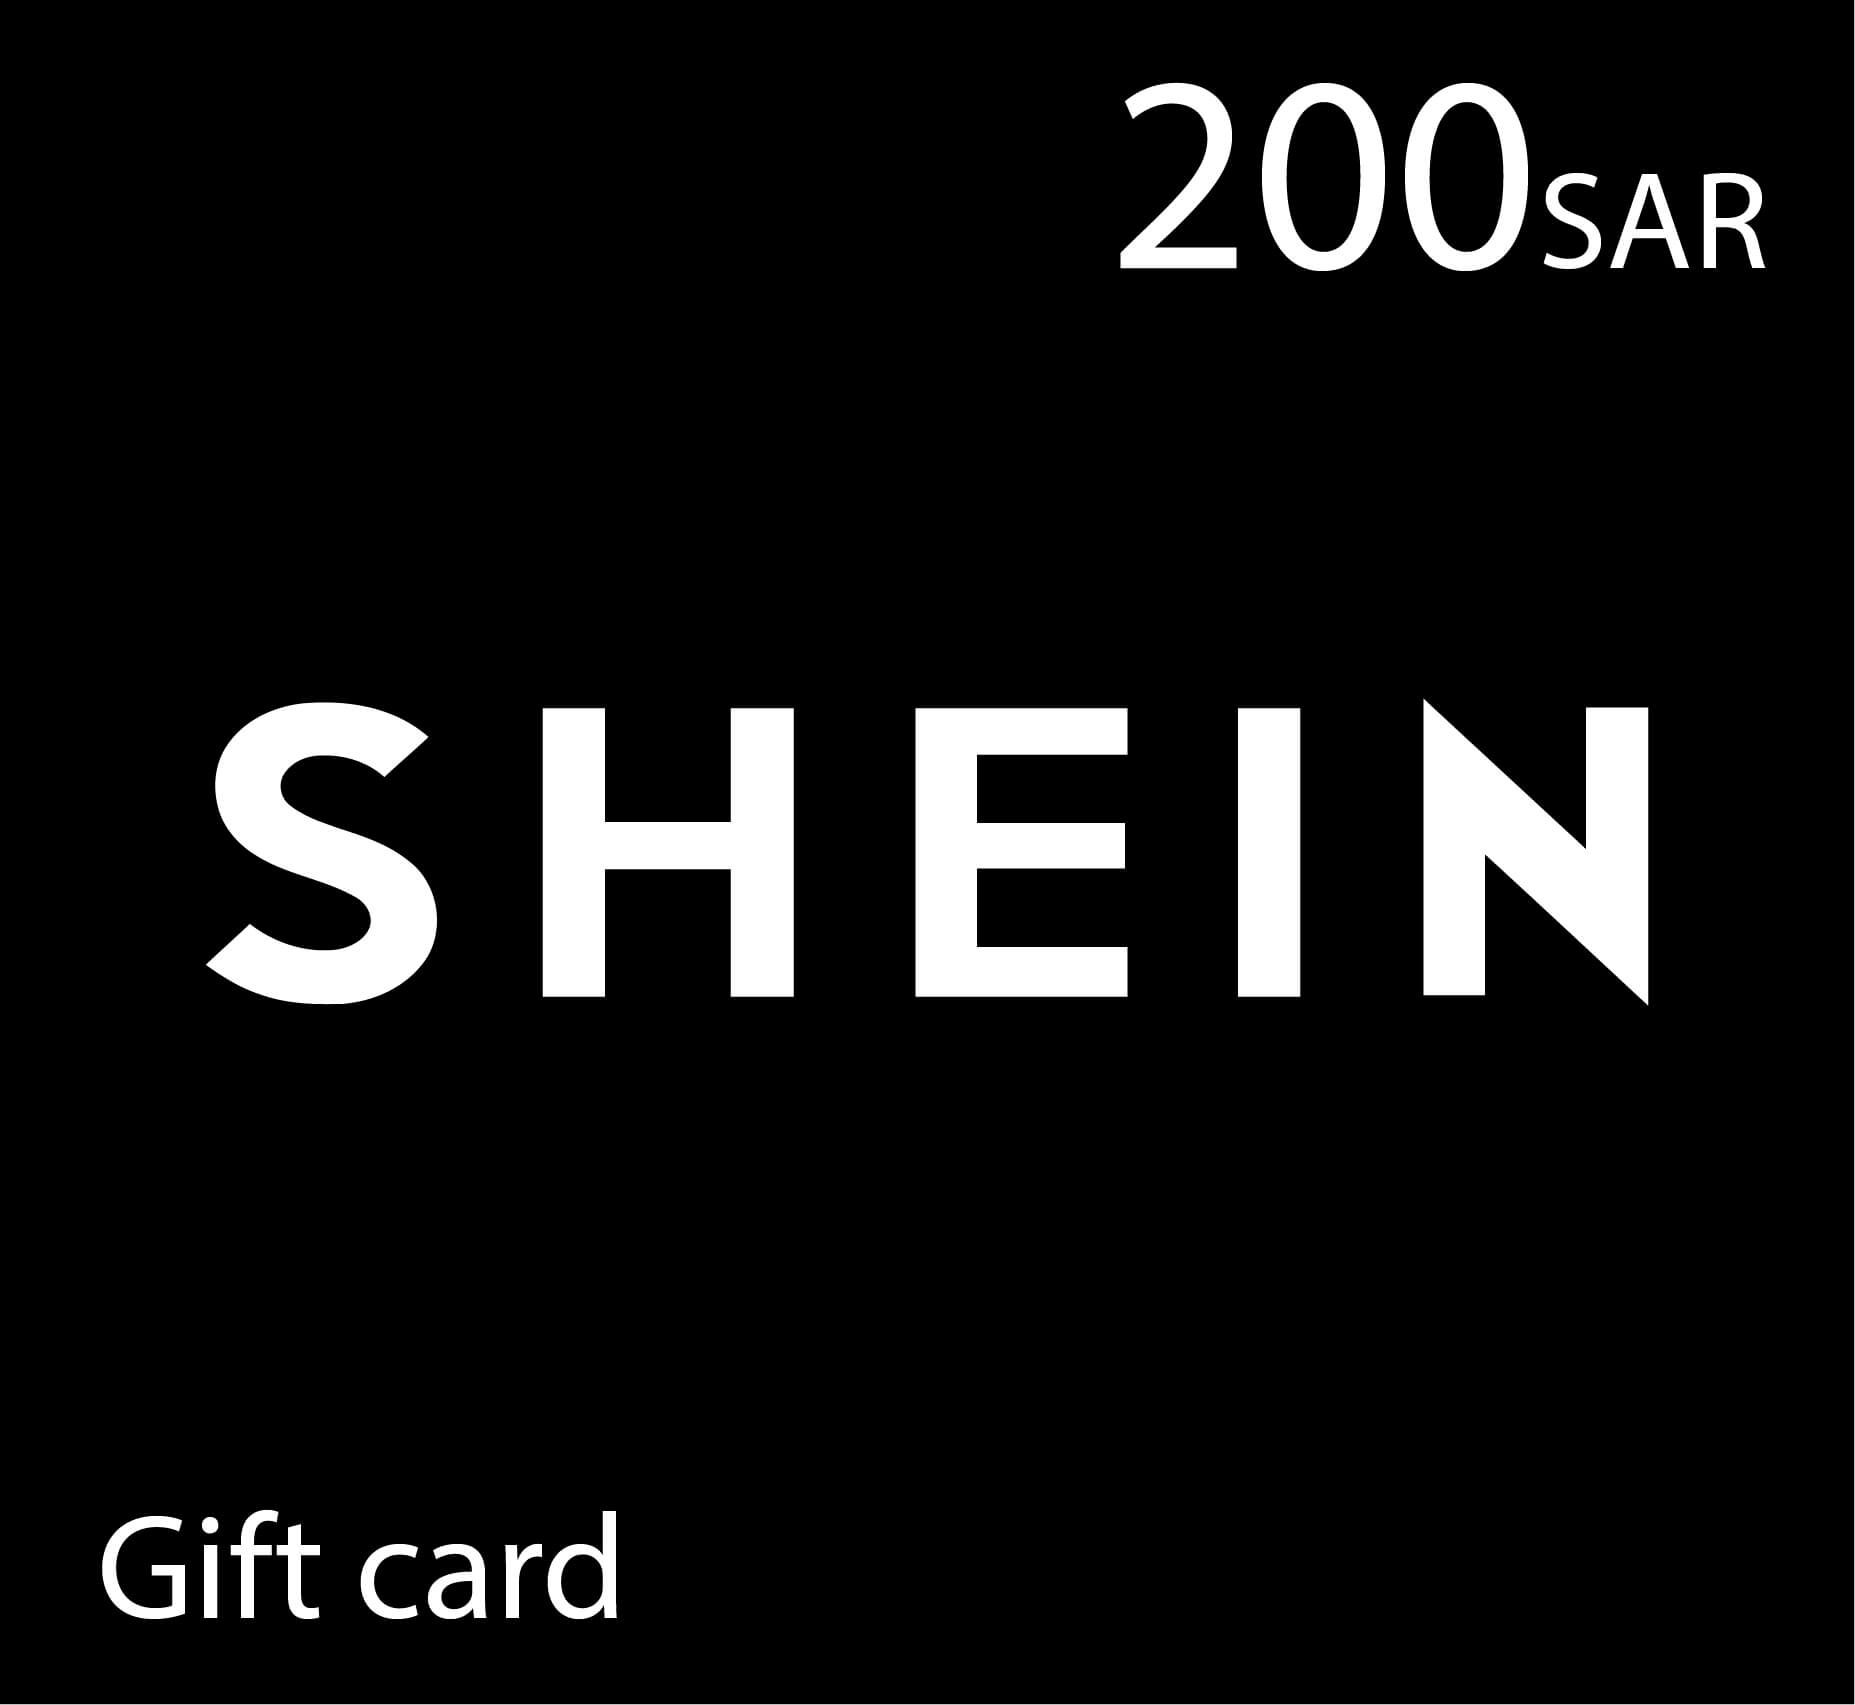 Shein Gift Card - 200 SAR